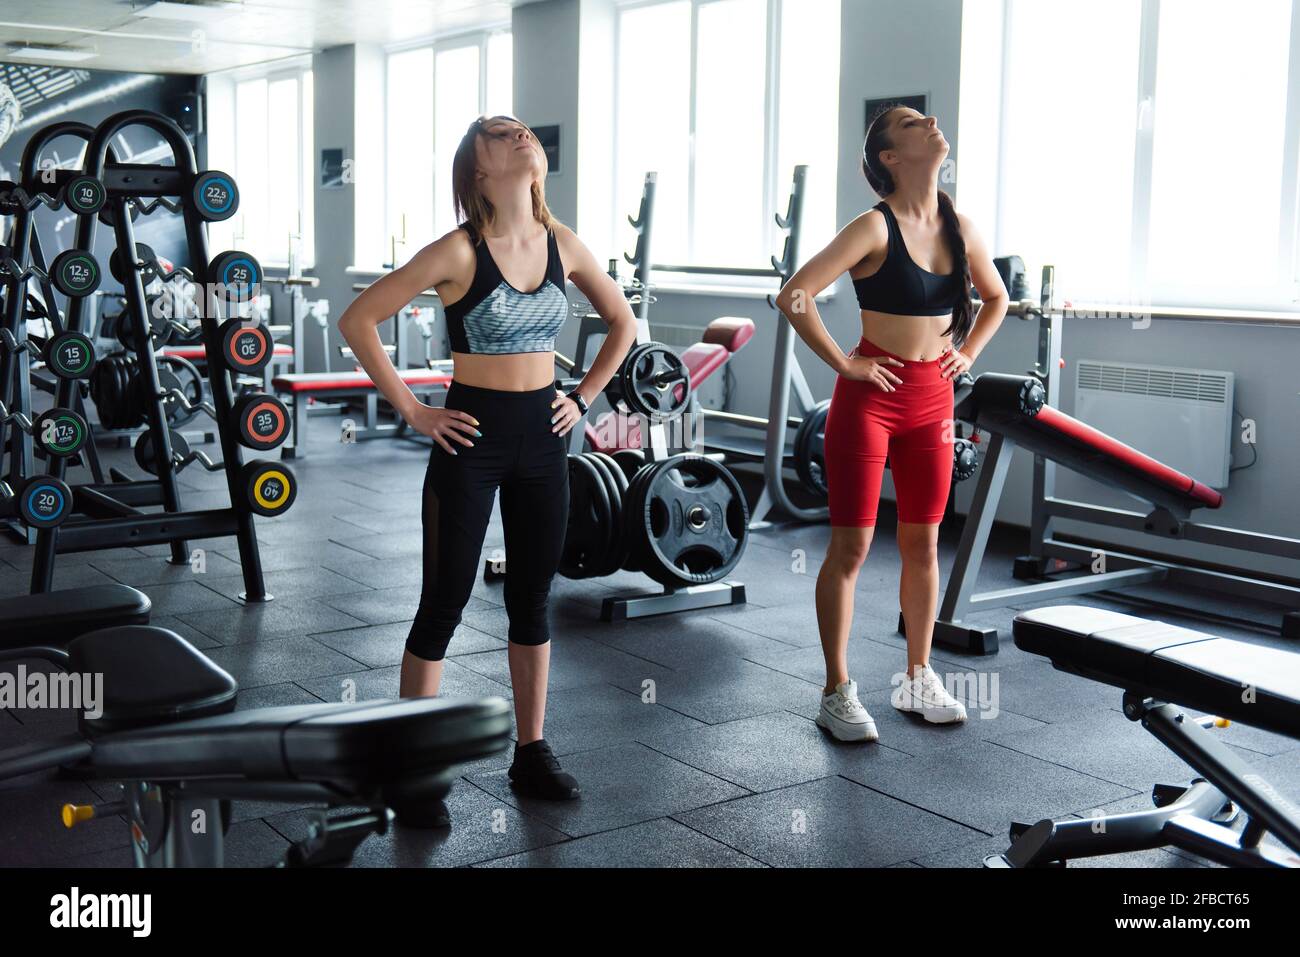 Zwei aktive junge Frauen in Sportbekleidung wärmen sich vor dem Training im  modernen Fitnessstudio auf. Gesunde, beste Freunde trainieren gemeinsam im  Fitnesscenter Stockfotografie - Alamy